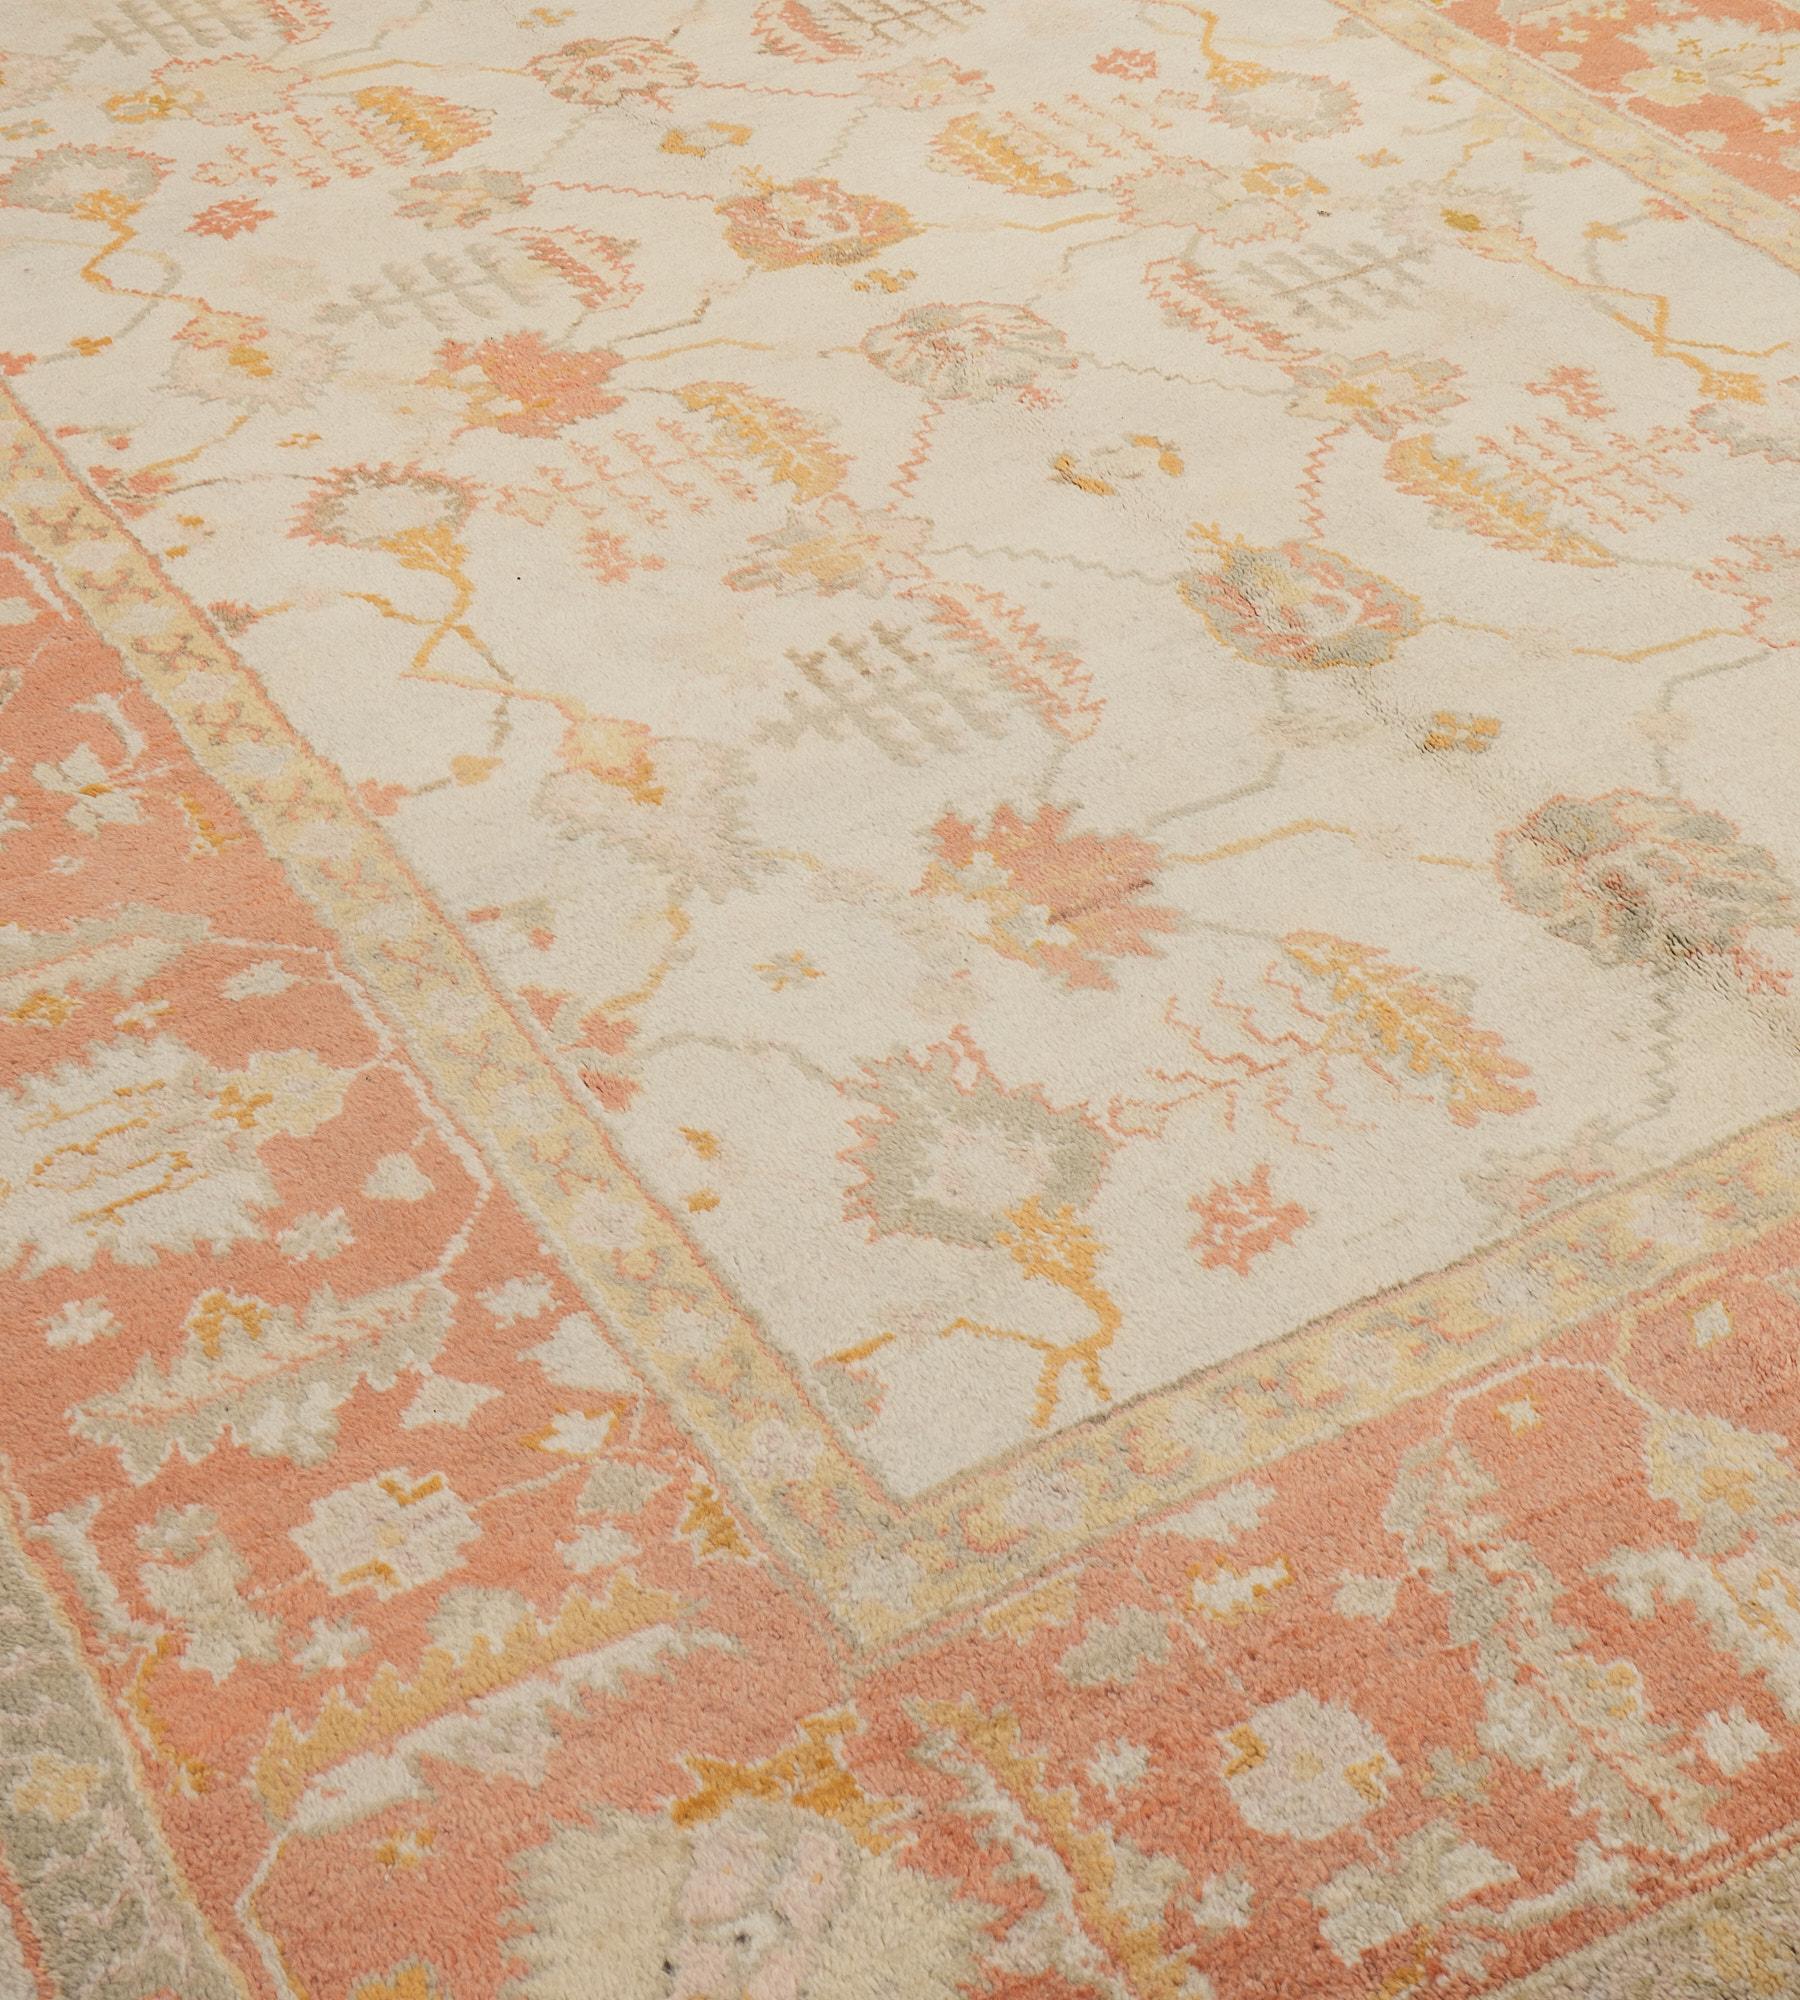 Ce tapis antique Anoss/One présente un champ ivoire avec un motif général de palmettes et de feuilles de vigne dentelées rose terracotta, jaune sable et gris tendre, dans une large bordure rose terracotta avec de grandes palmettes ivoire reliées par